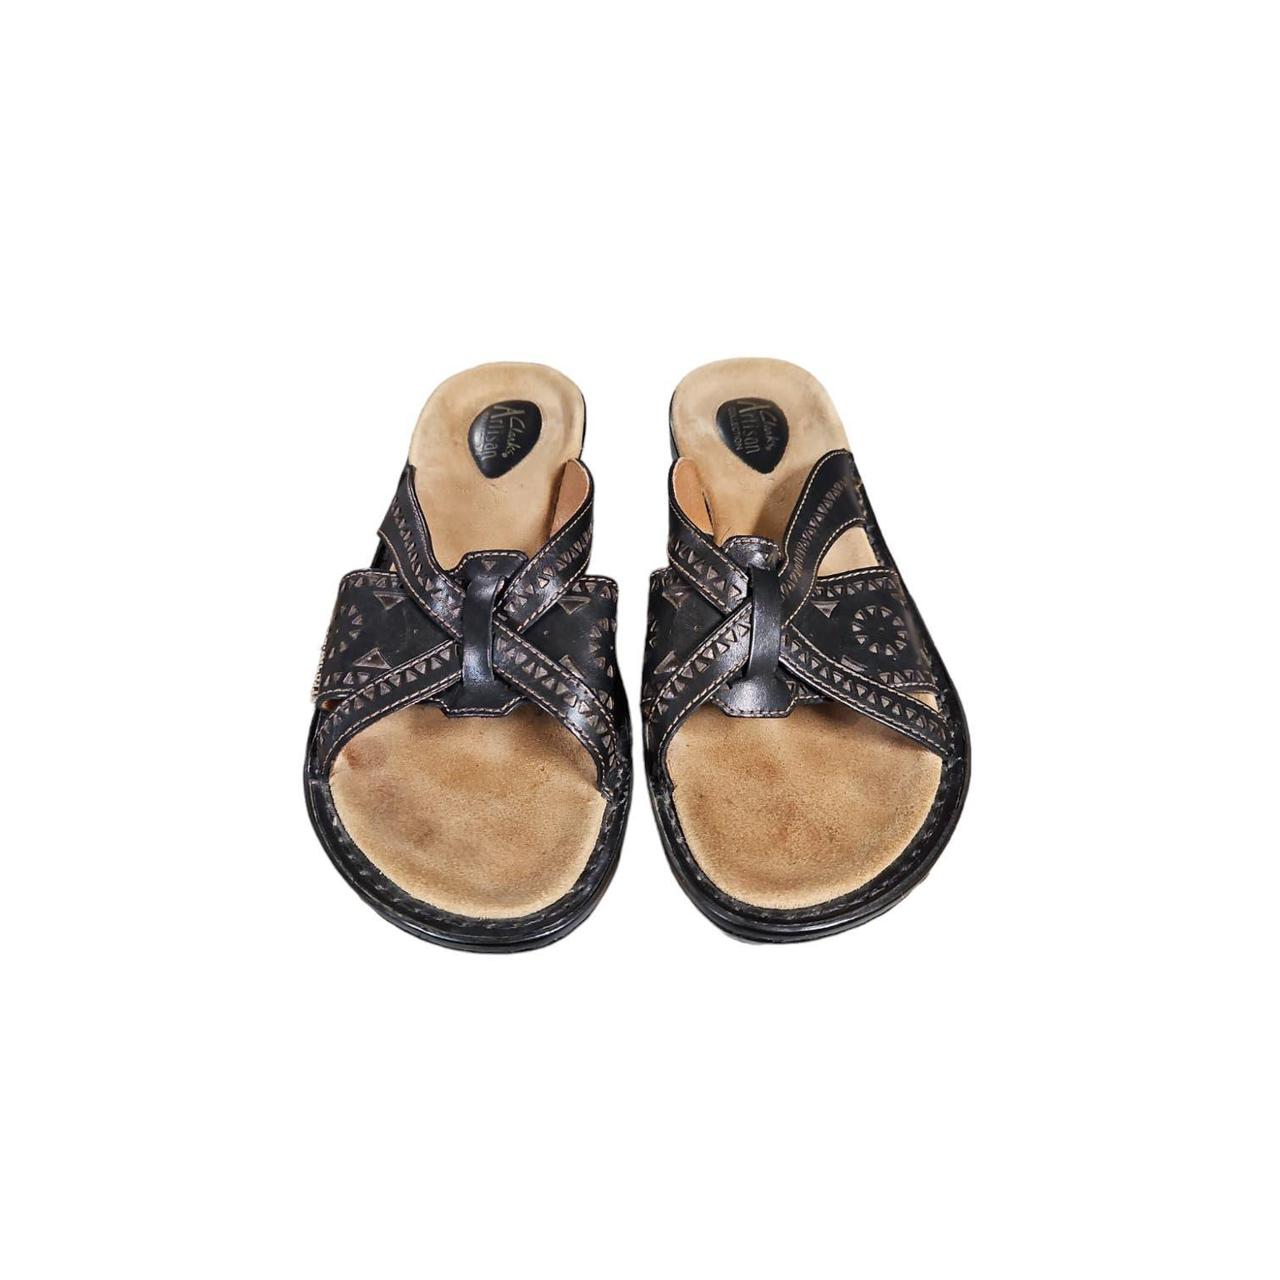 Clarks Shoes, Sandals & Boots | Peltz Shoes